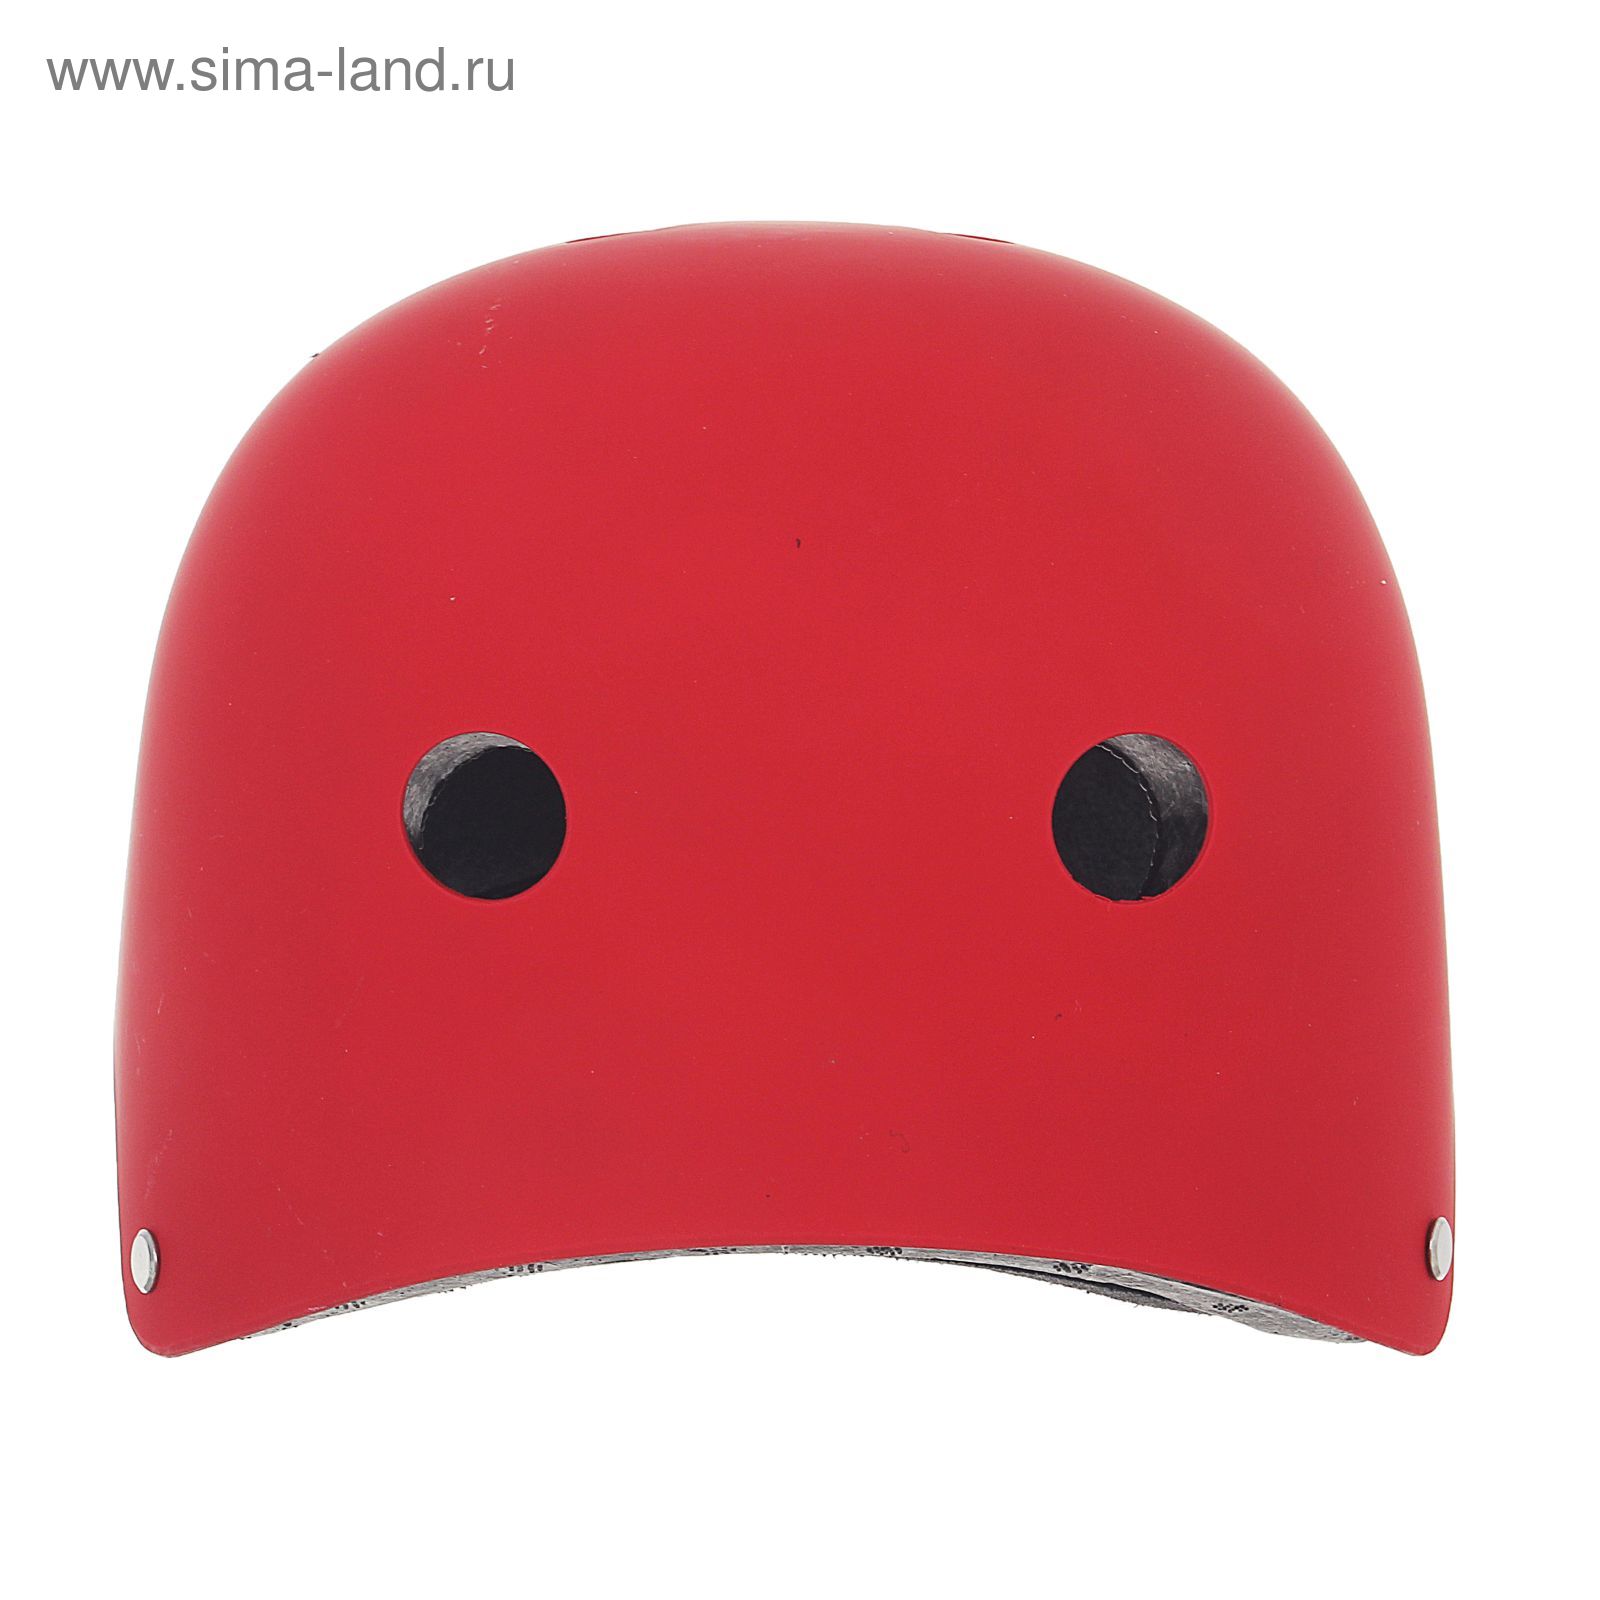 Шлем велосипедиста взрослый ОТ-GK1, матовый, красный d=56 см